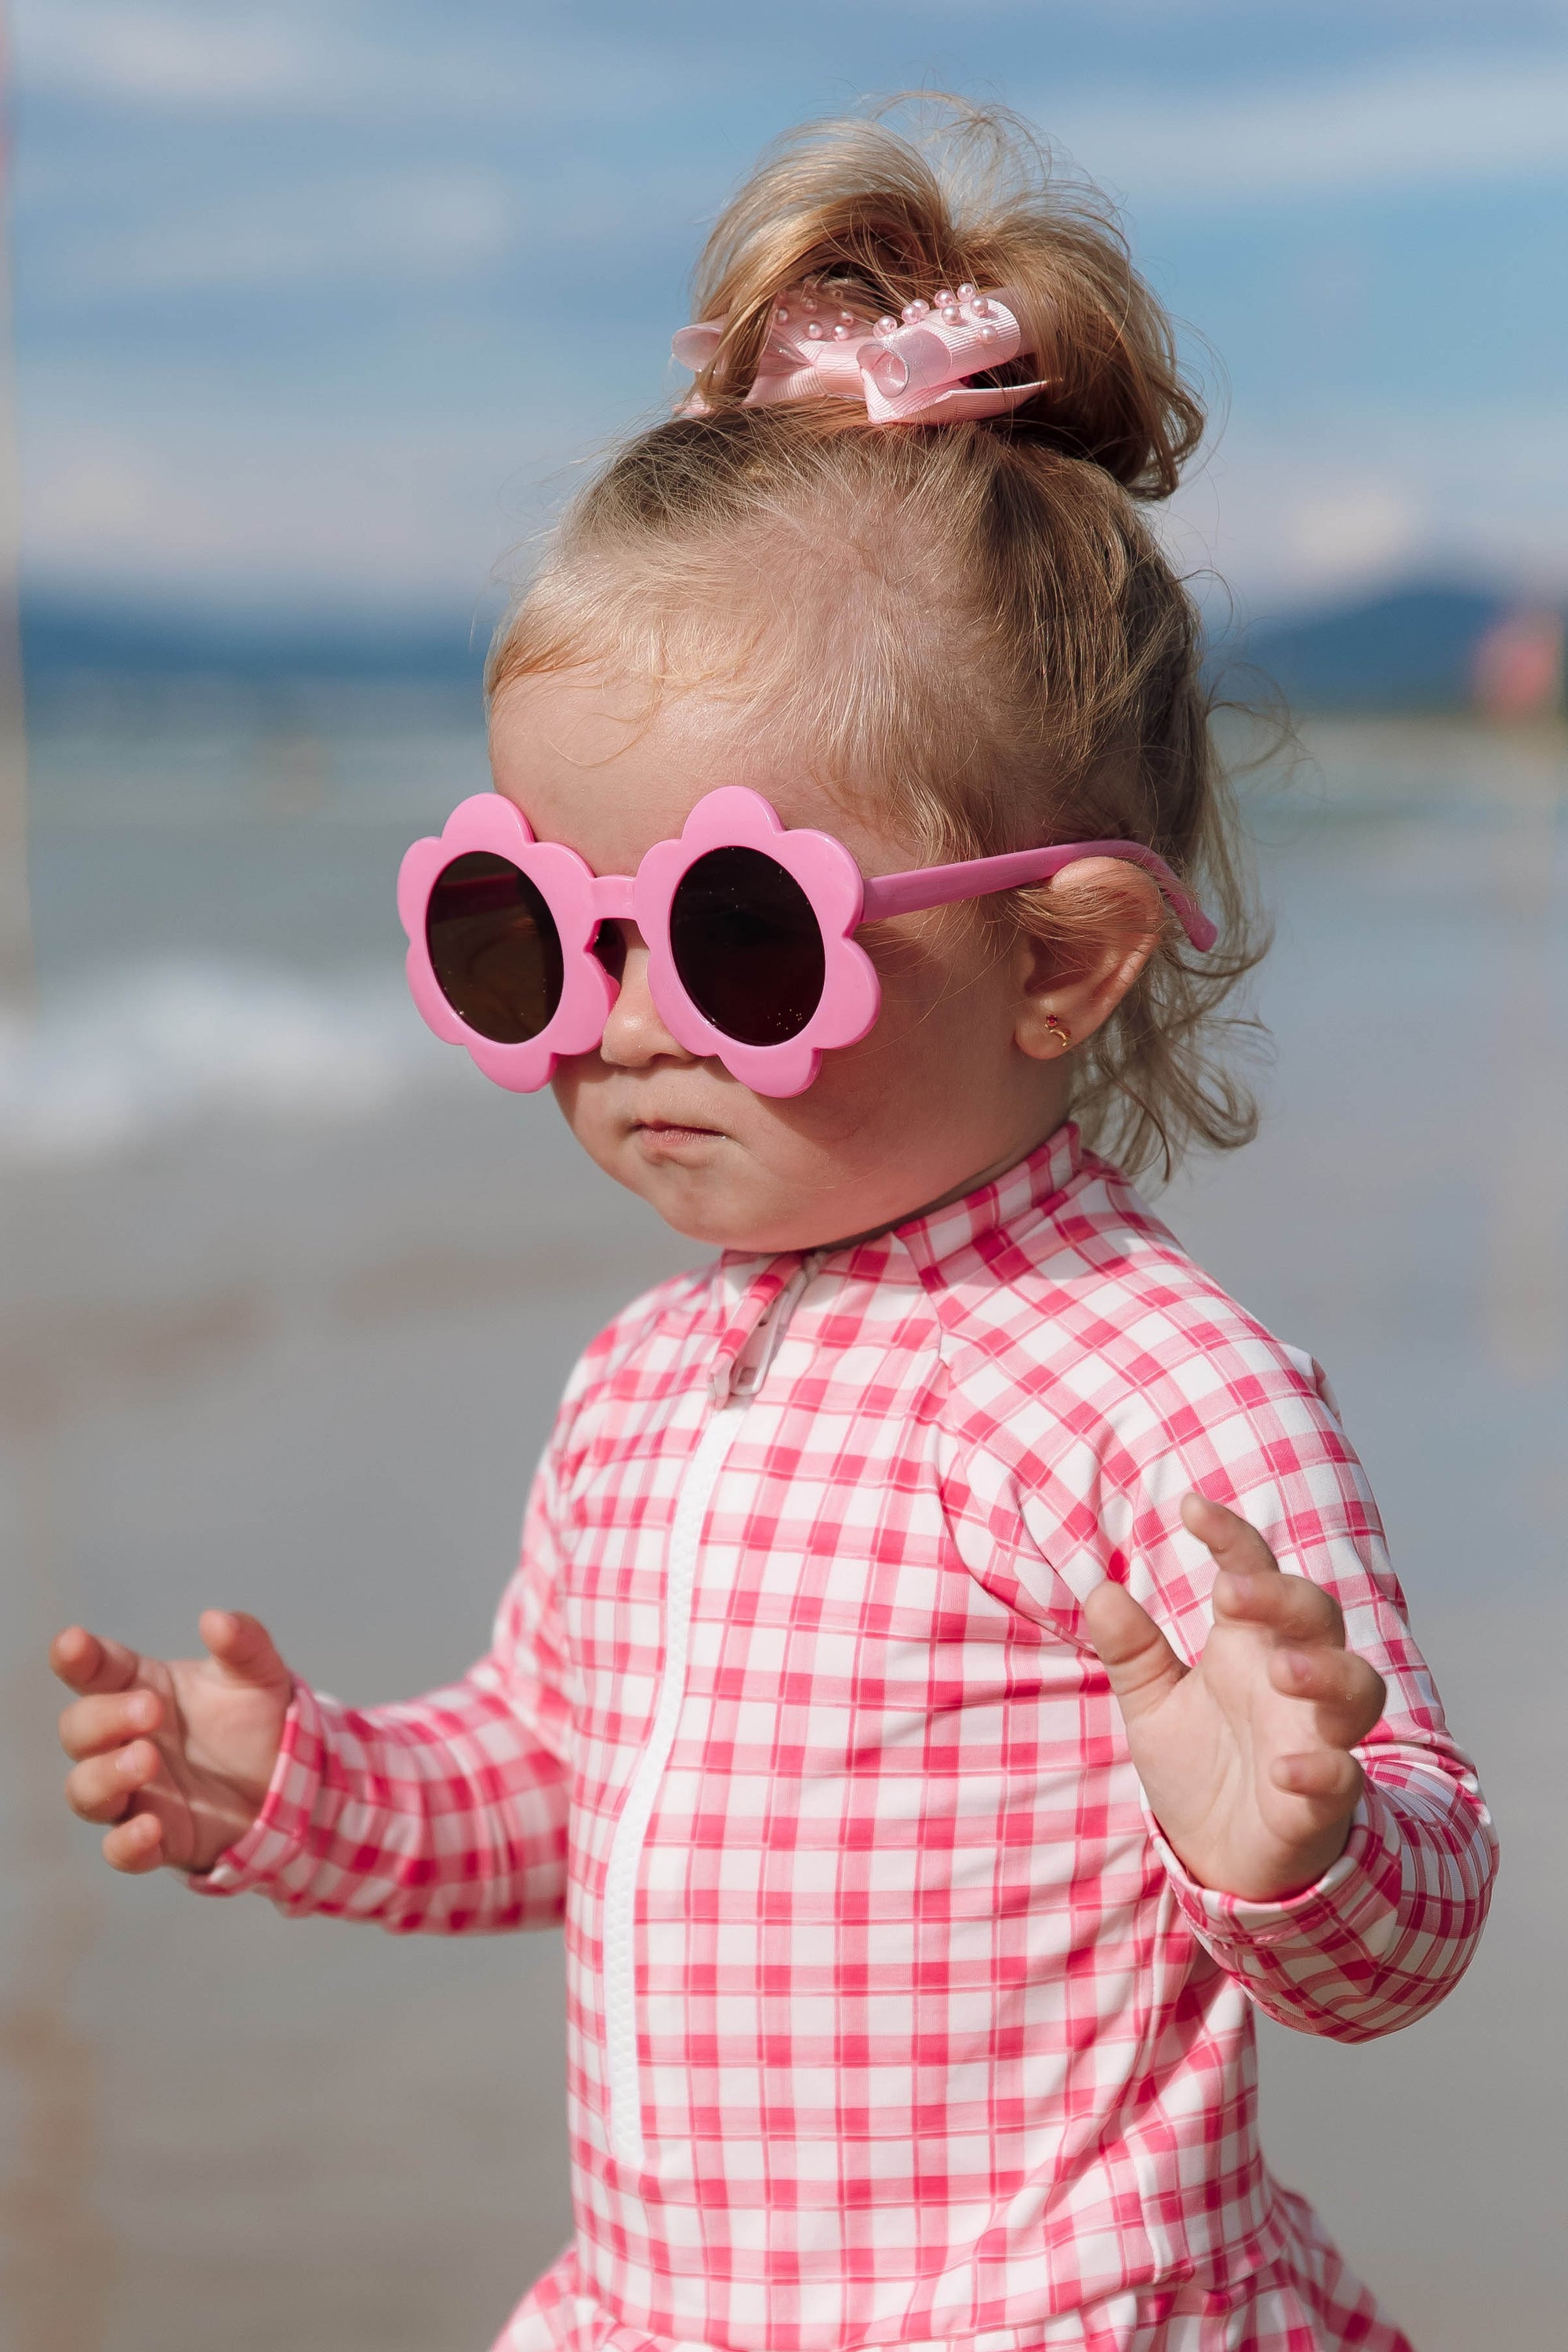 óculos Infantis de Florzinha perfeitos para a criançada! Com design moderno e cores vibrantes que eles adoram, nossos óculos não são apenas estilosos, mas também seguros. Equipados com lentes UV400, garantem proteção total, bloqueando 100% dos raios ultravioleta. Ideal para dias de sol na praia, no parque ou qualquer aventura ao ar livre.